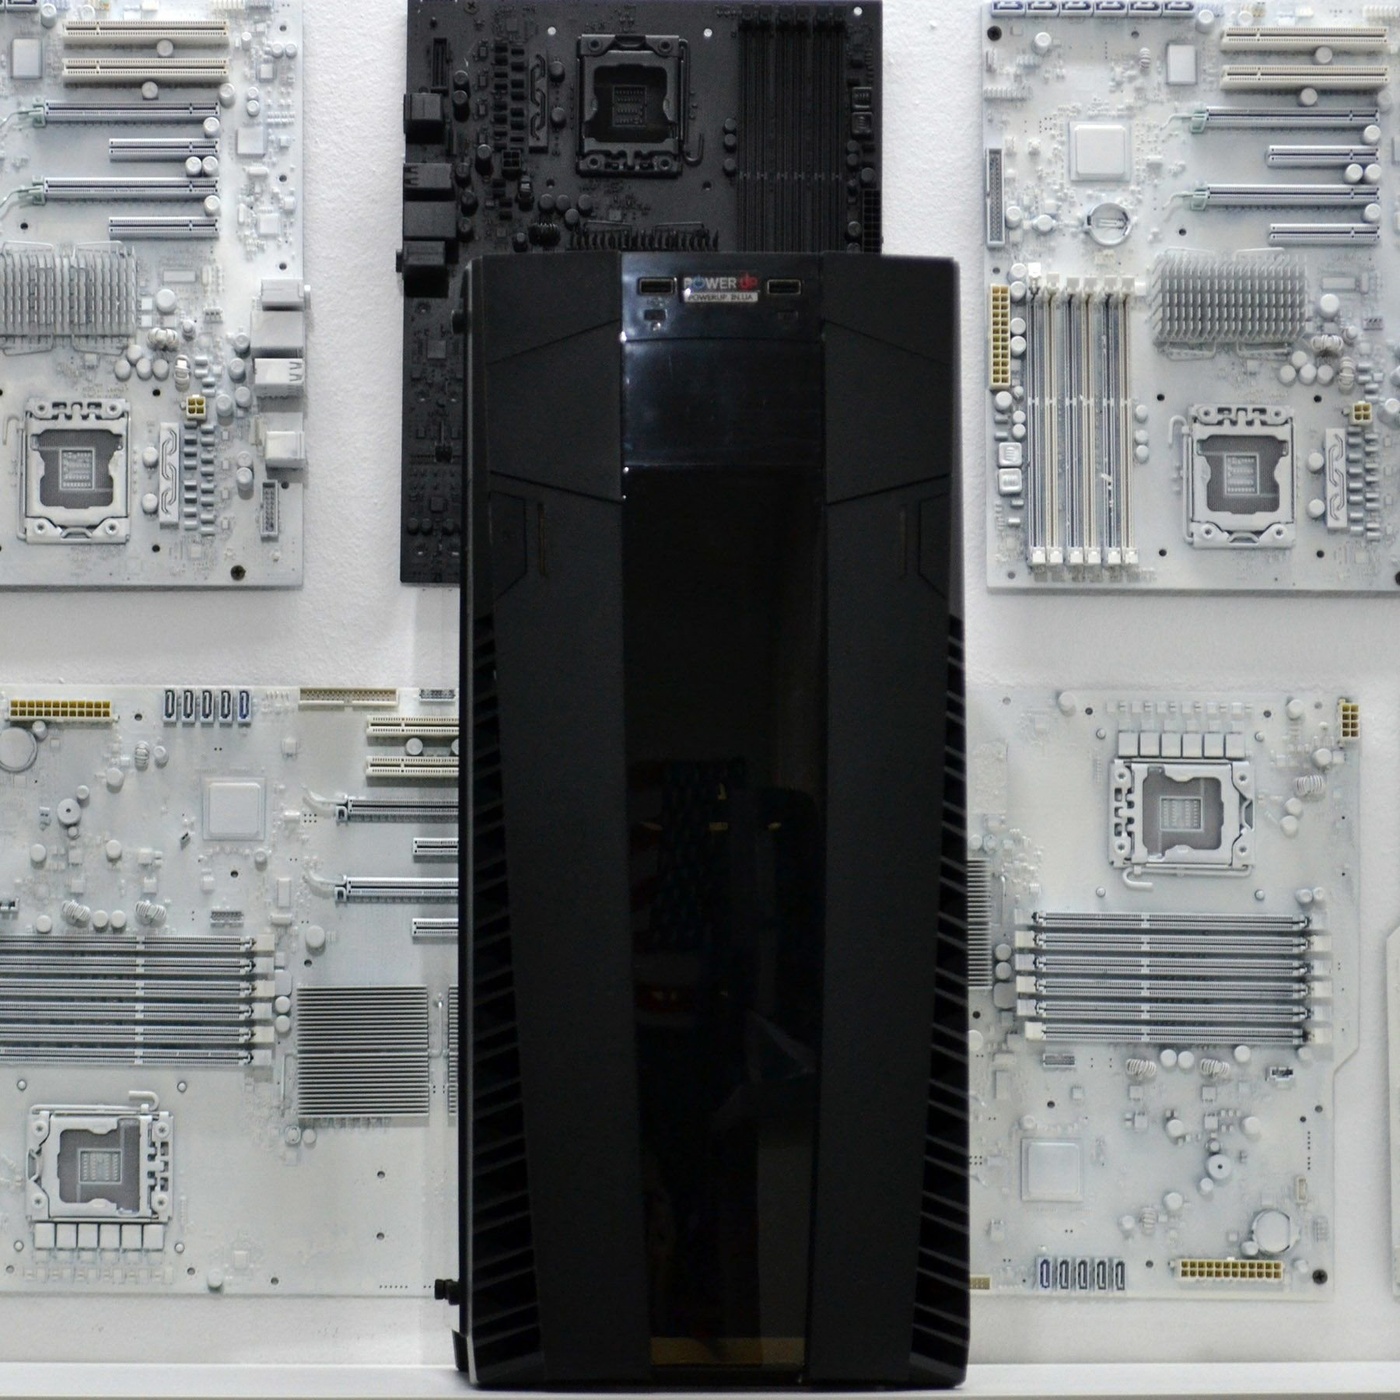 Ігровоий PowerUp #55 Xeon E5 1620 v3/16 GB/SSD 240 GB/GeForce GTX 1660 6GB